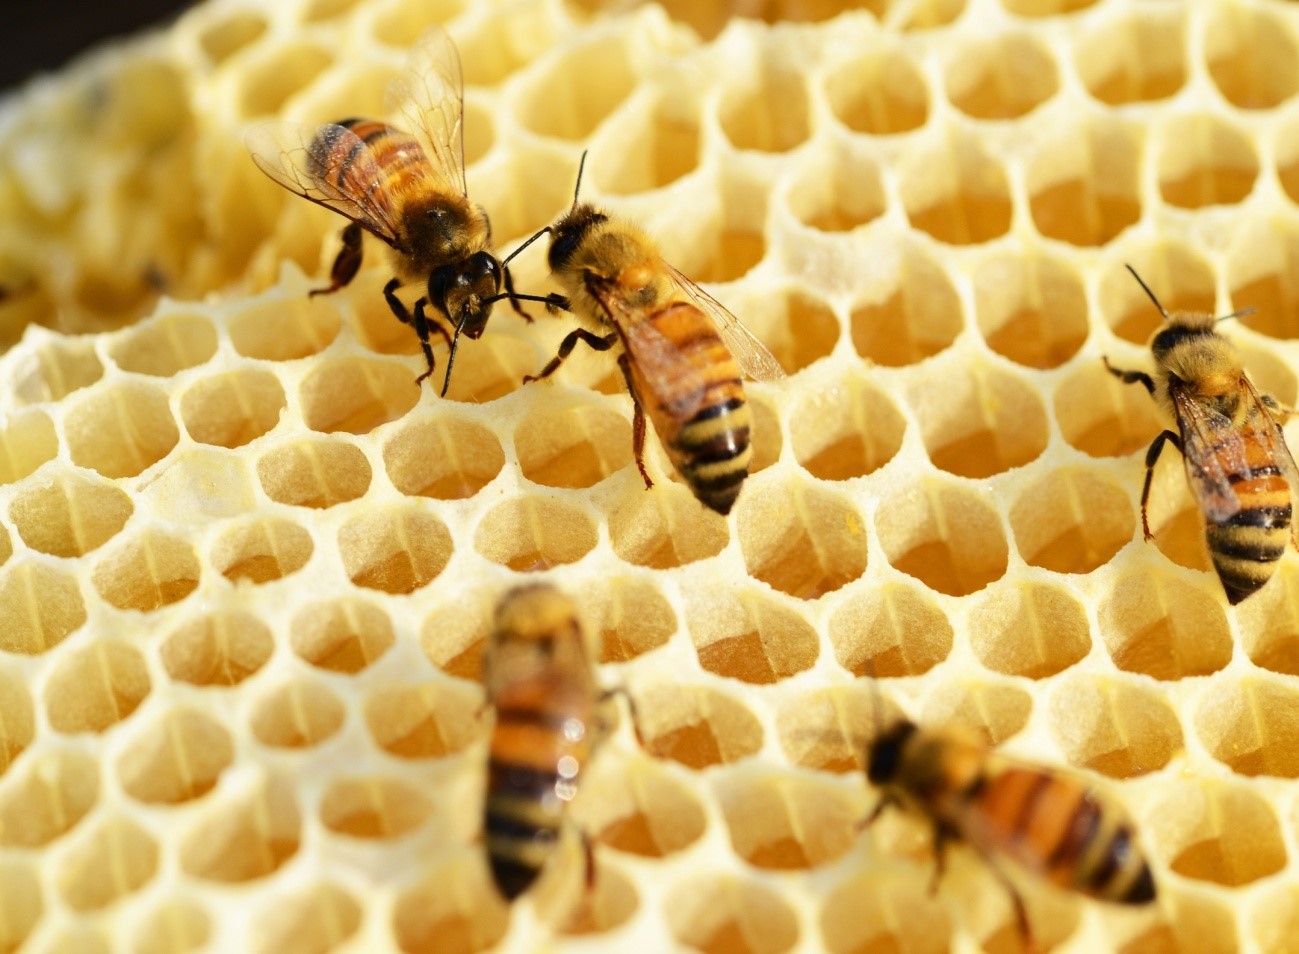 Cómo construyen las abejas sus panales? - Ciencia y tecnología